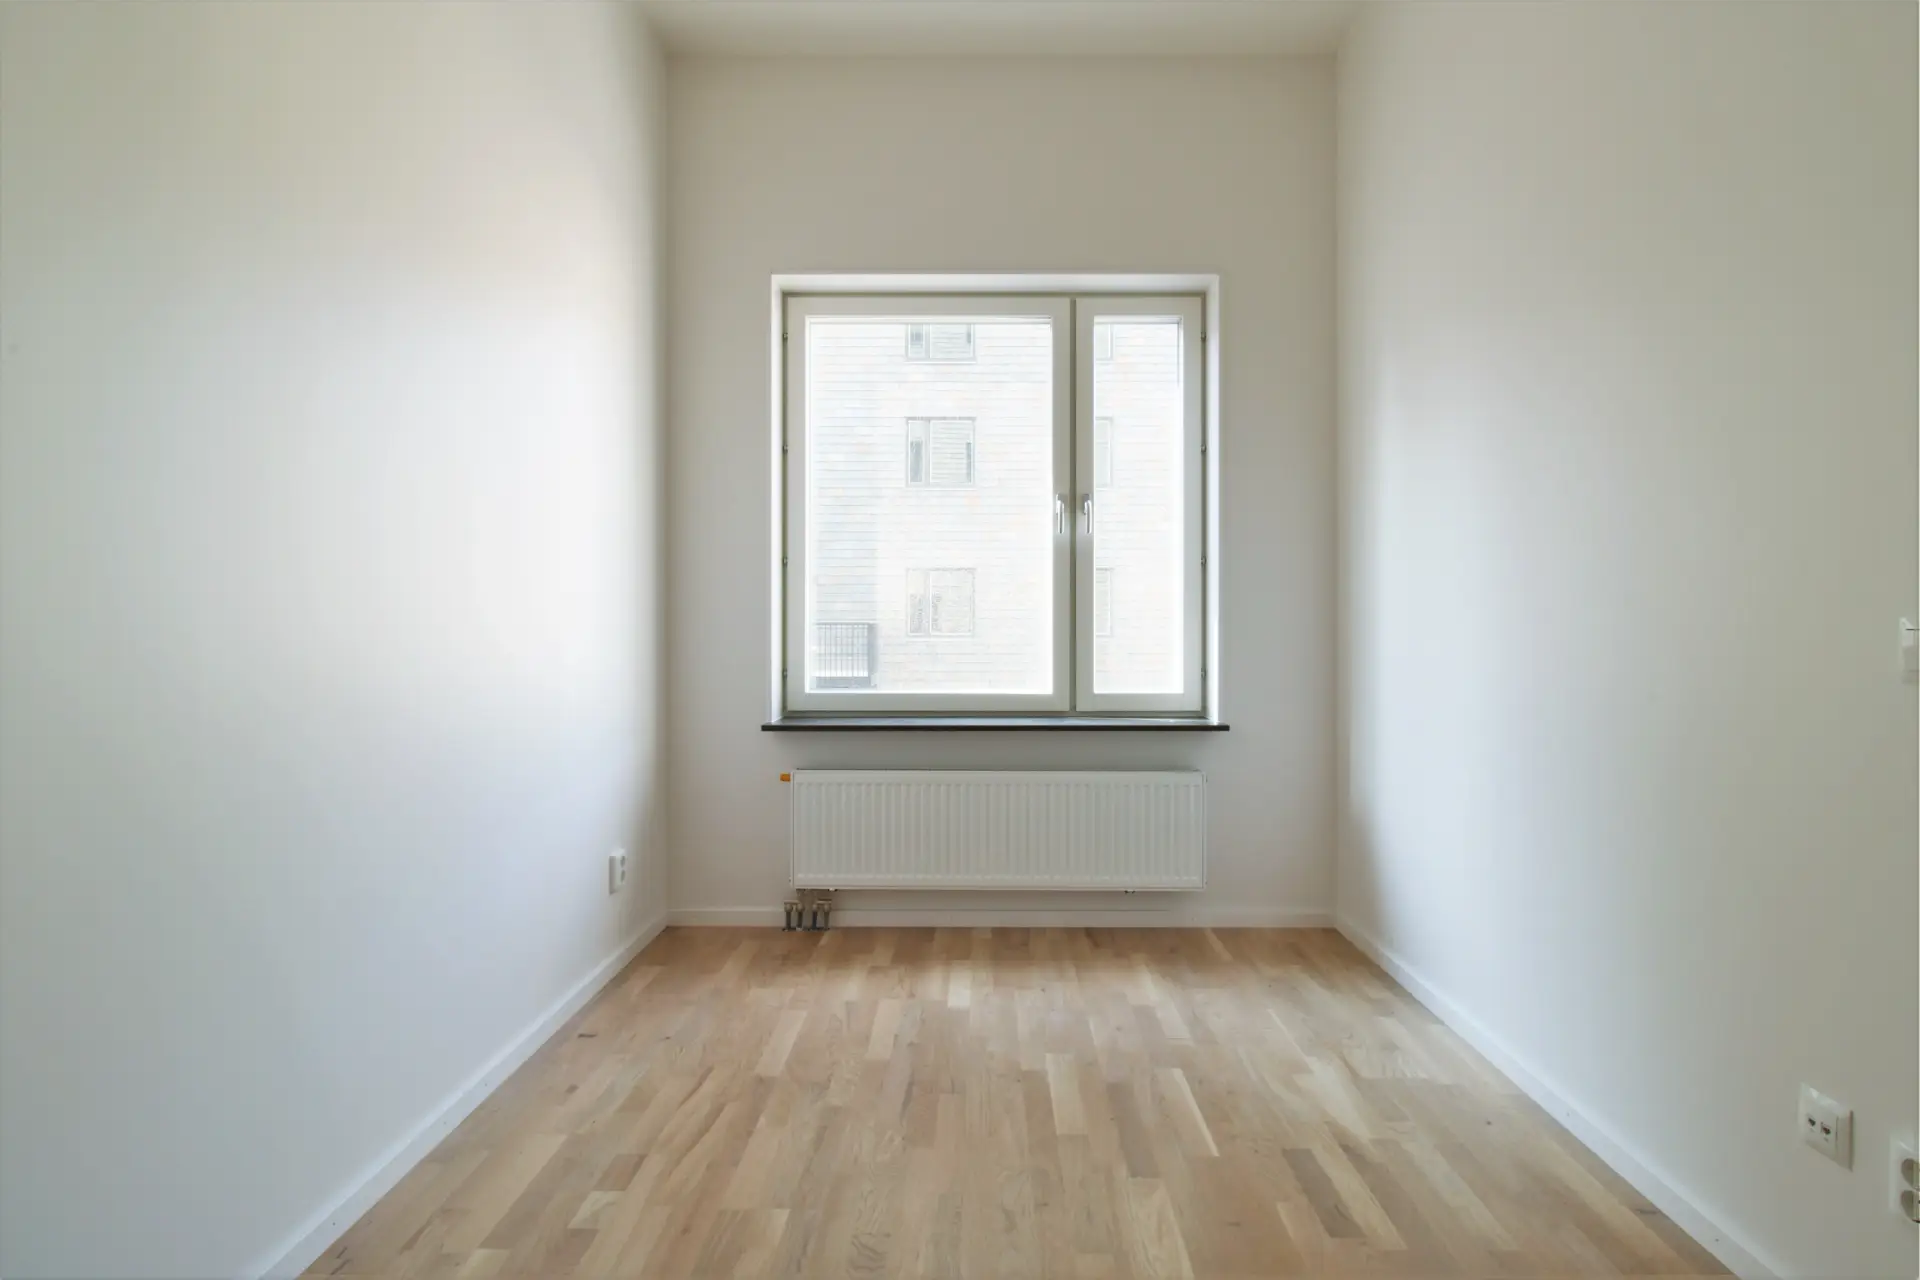 Tomt rum med vita väggar, trägolv och ett stort fönster som vetter mot en byggnad och visar naturligt ljus. Ett element finns under fönstret.